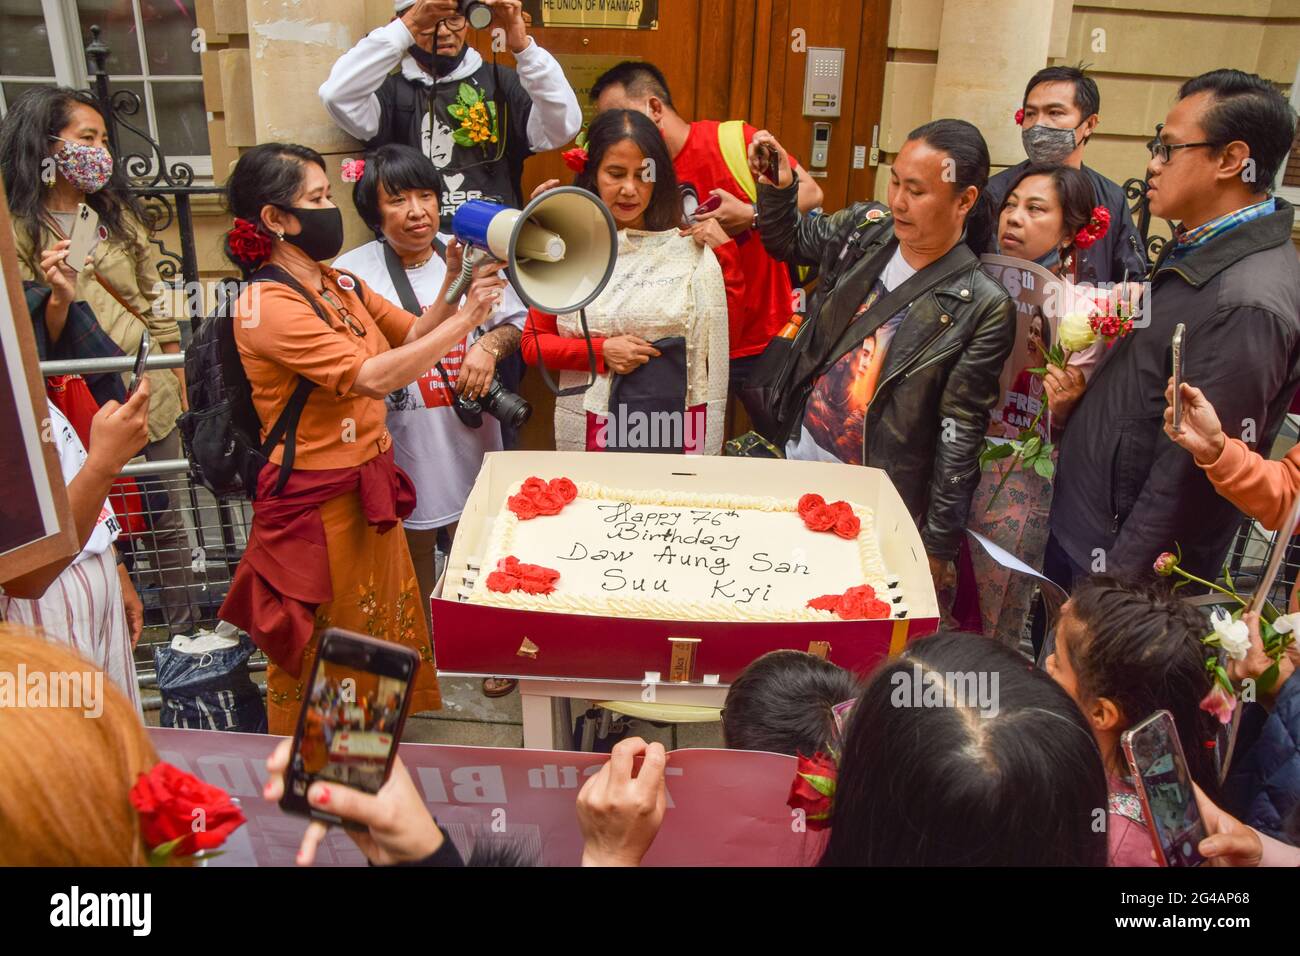 Londres, Royaume-Uni. 19 juin 2021. Les manifestants apportent un gâteau d'anniversaire devant l'ambassade du Myanmar à Mayfair. Les manifestants anti-coup du Myanmar ont défilé dans le centre de Londres à l'occasion de l'anniversaire d'Aung San Suu Kyi. Banque D'Images